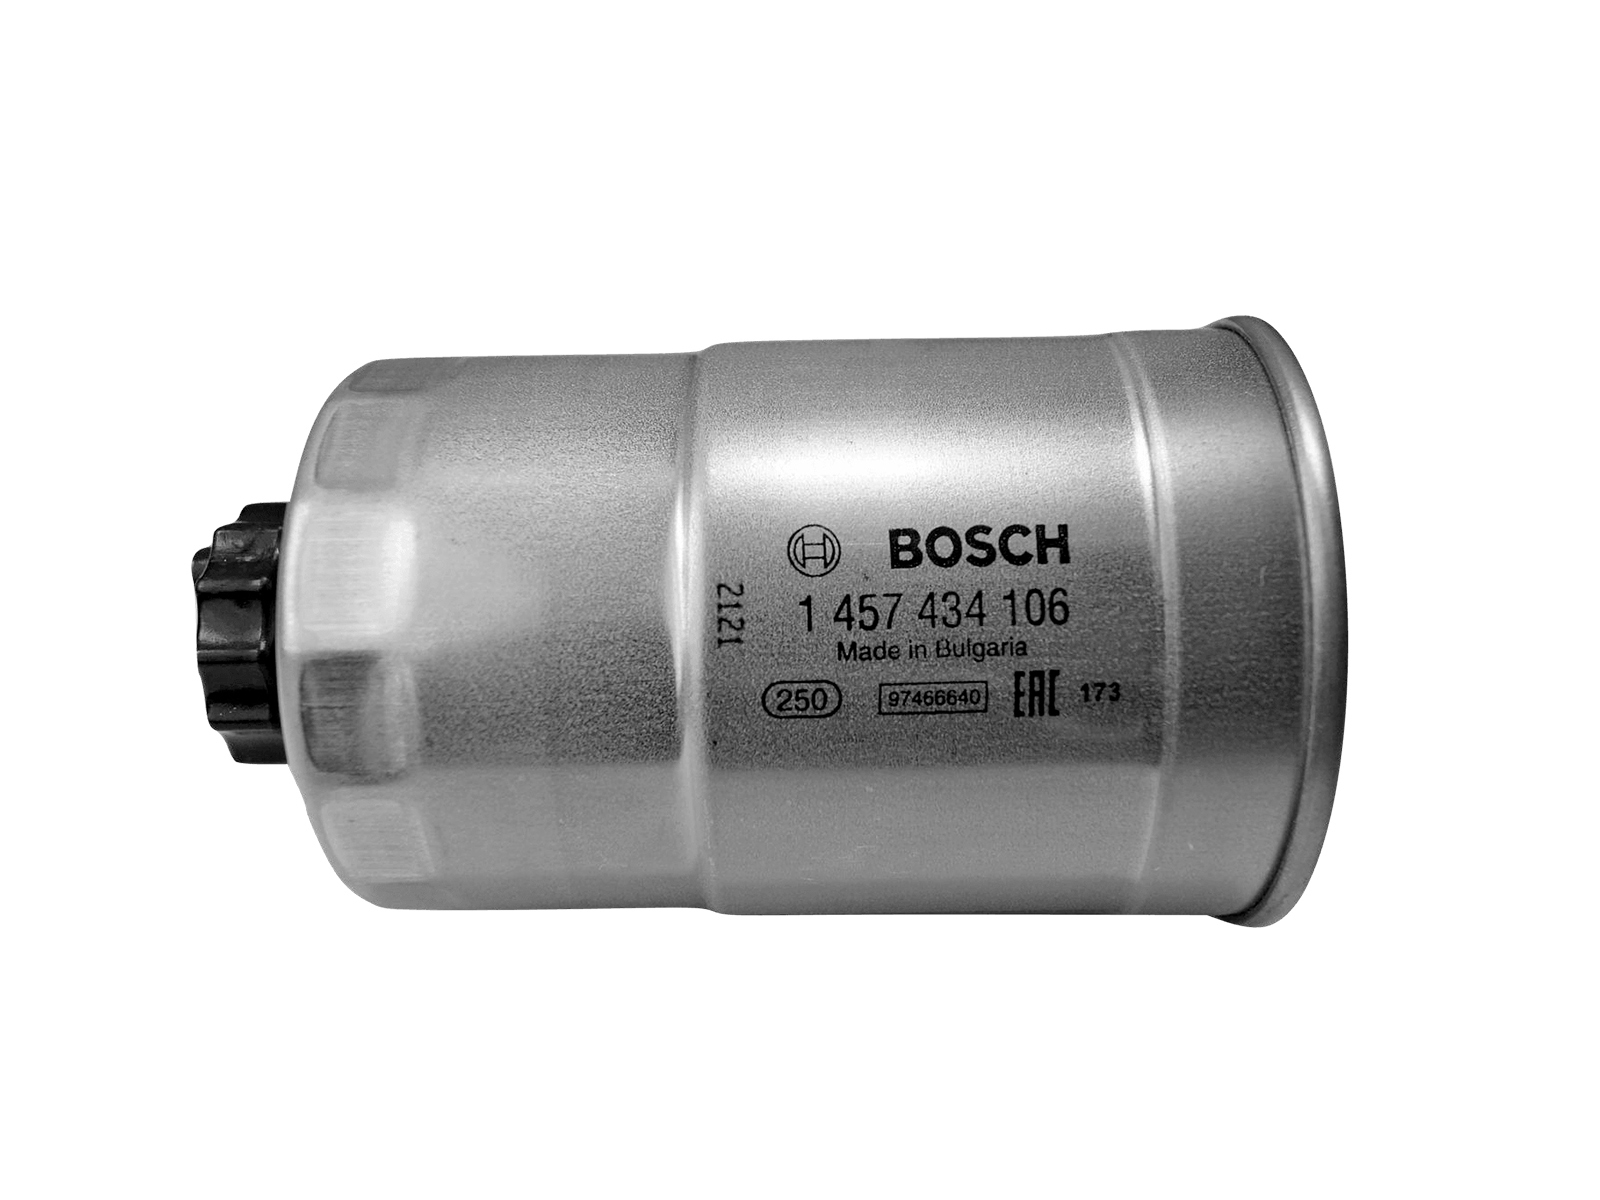 Фильтр топливный УАЗ тонкой отчистки ЗМЗ-514 BOSCH фотография №1